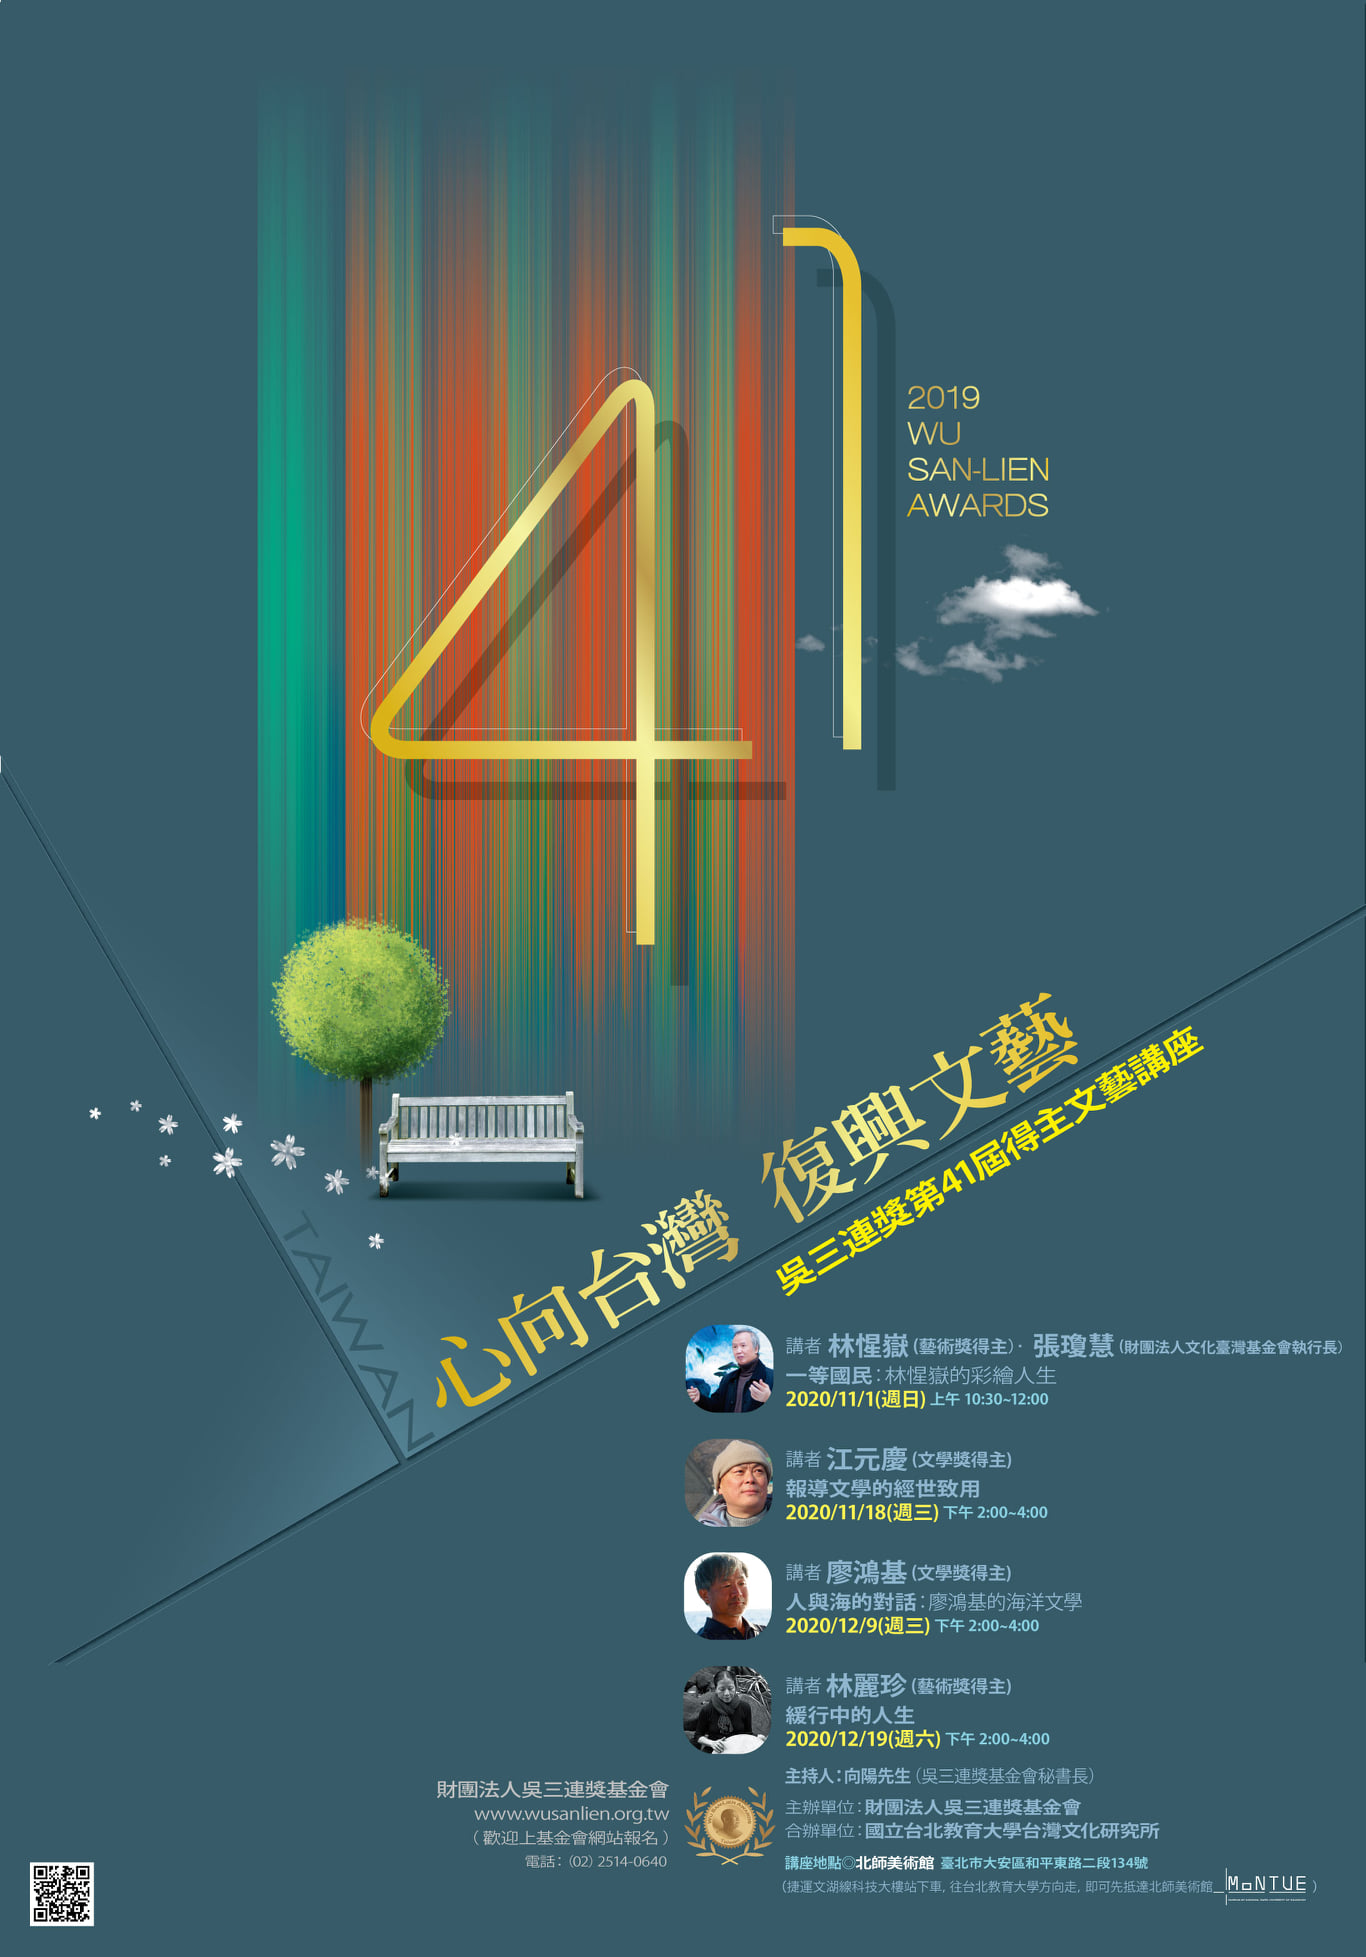 第41屆吳三連獎得主文藝講座宣傳海報